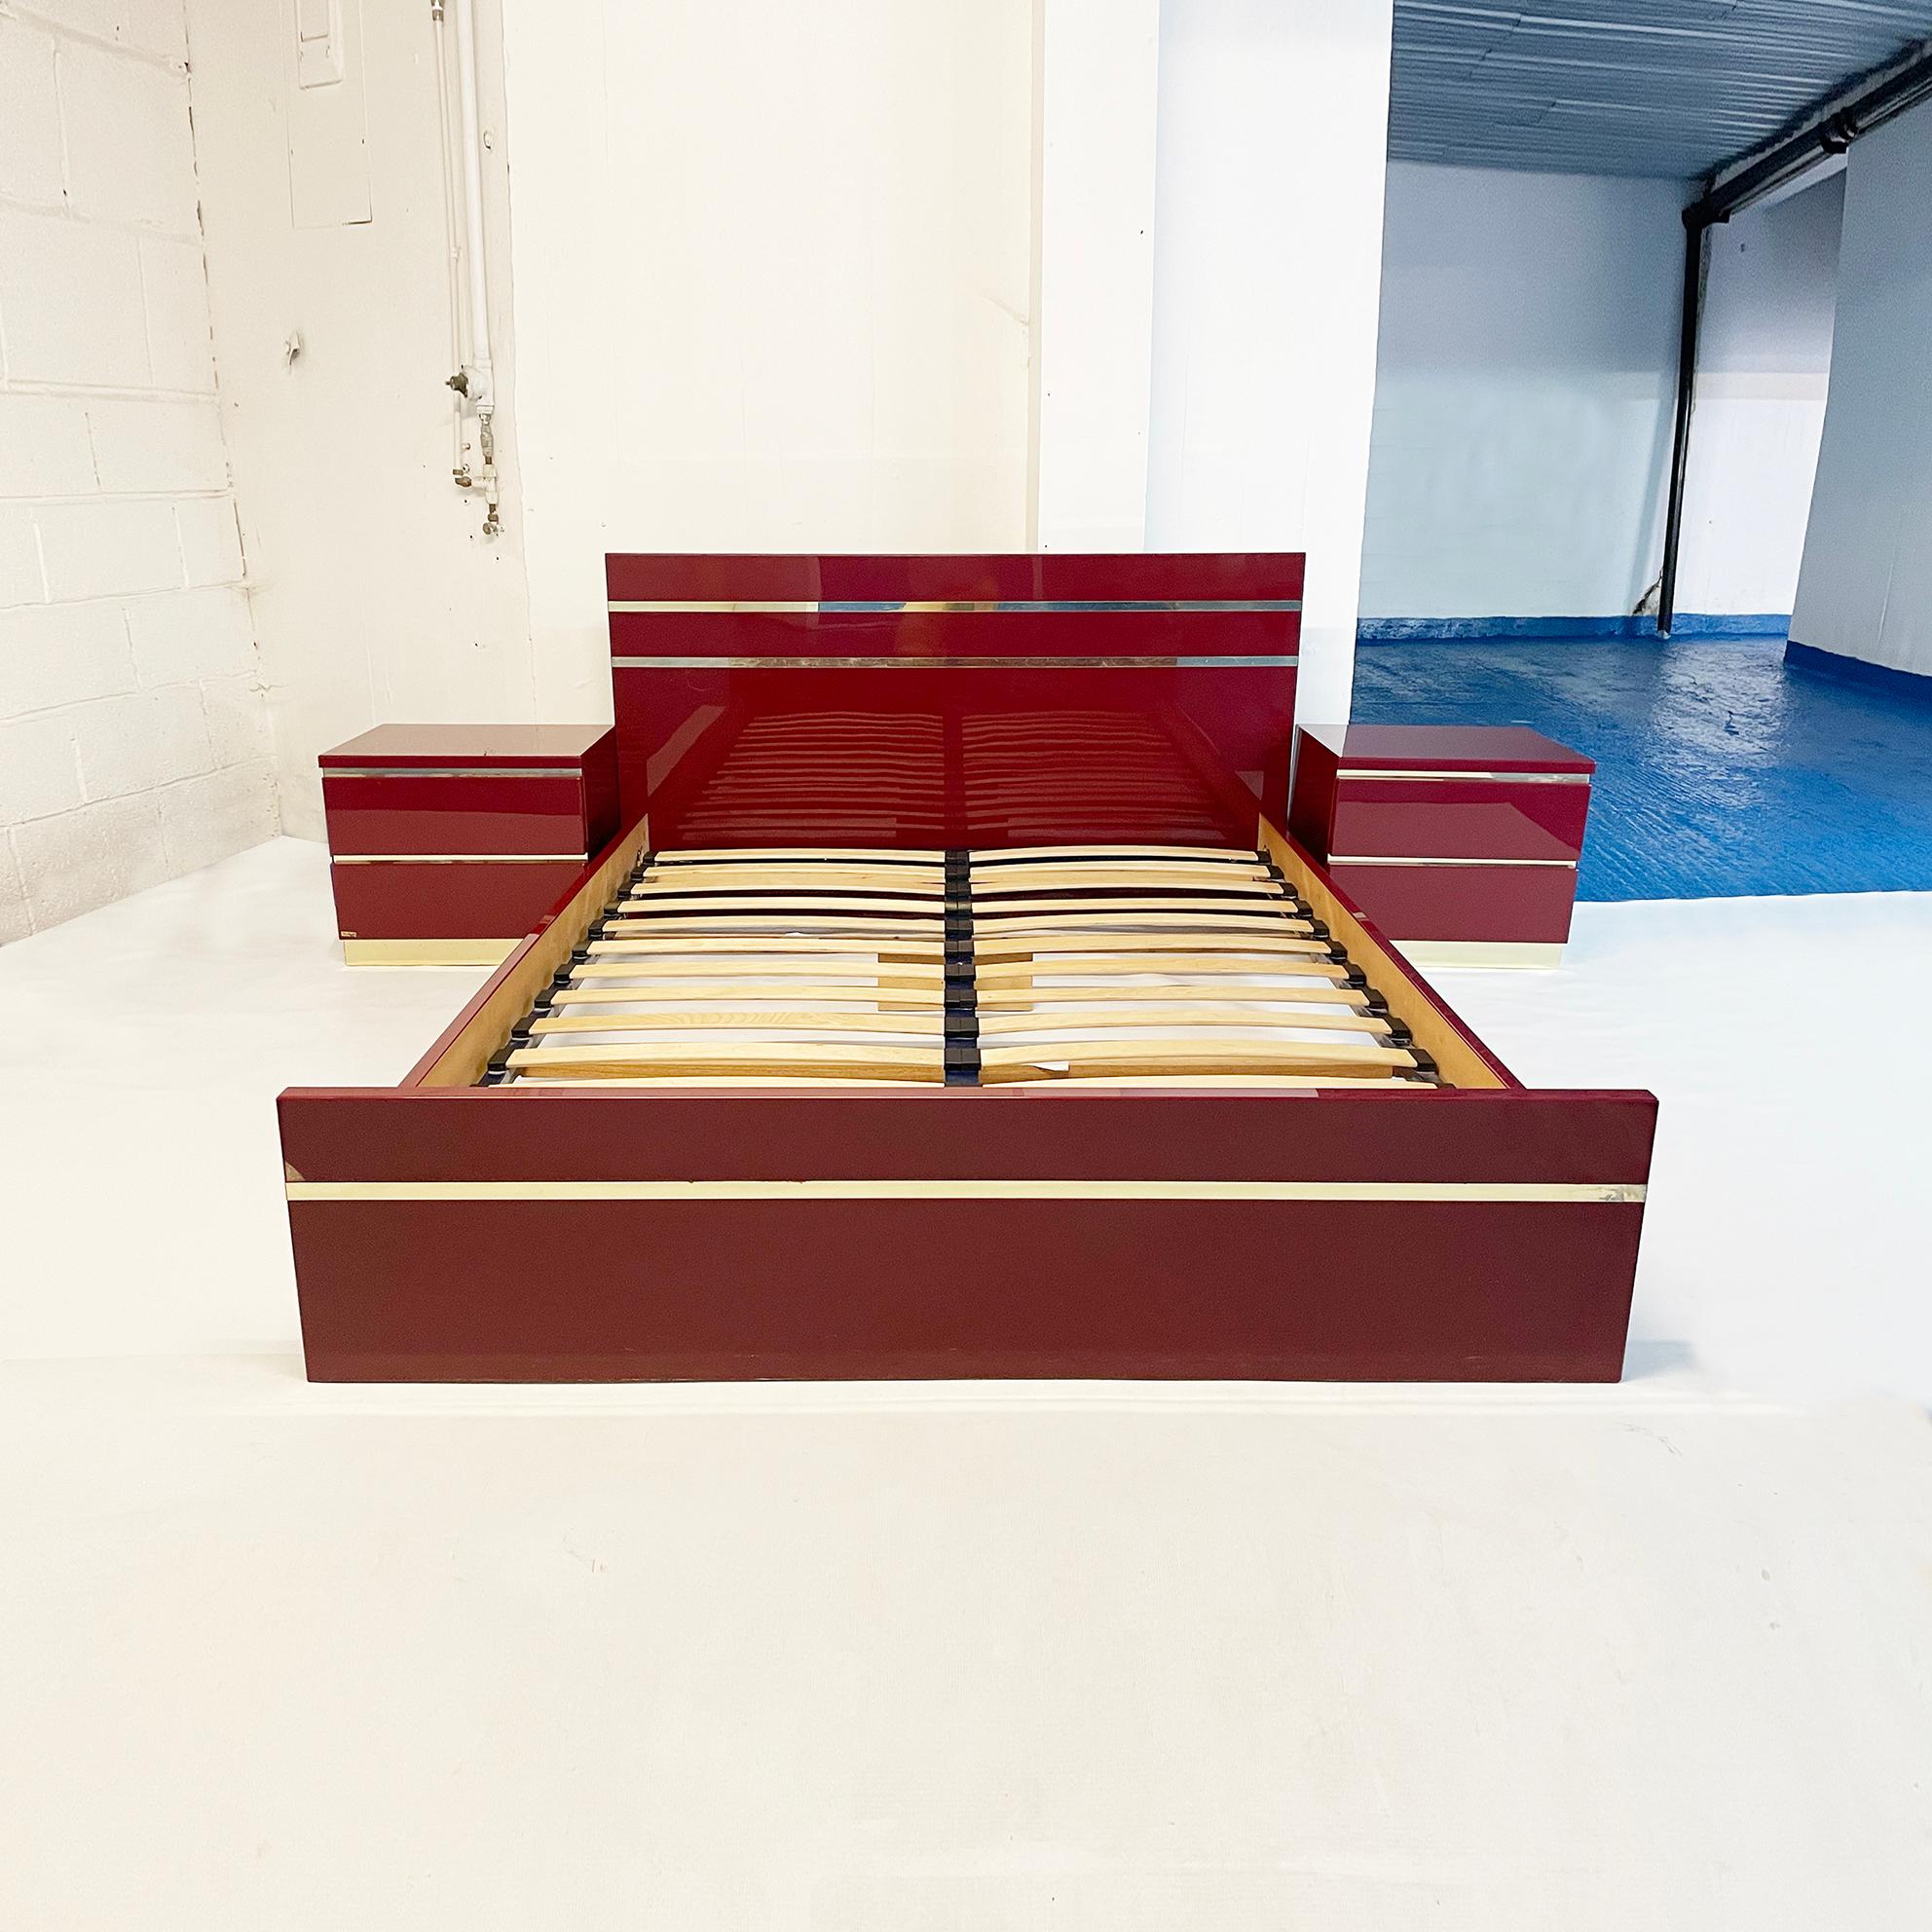 Ein exquisites Schlafzimmer-Set des französischen Designers Eric Maville aus den 1970er Jahren in tiefem Burgunderrot und Messing. Dieser signierte französische Import besteht aus einem Paar Nachttischen und einem Doppelbett aus bordeauxfarbenem